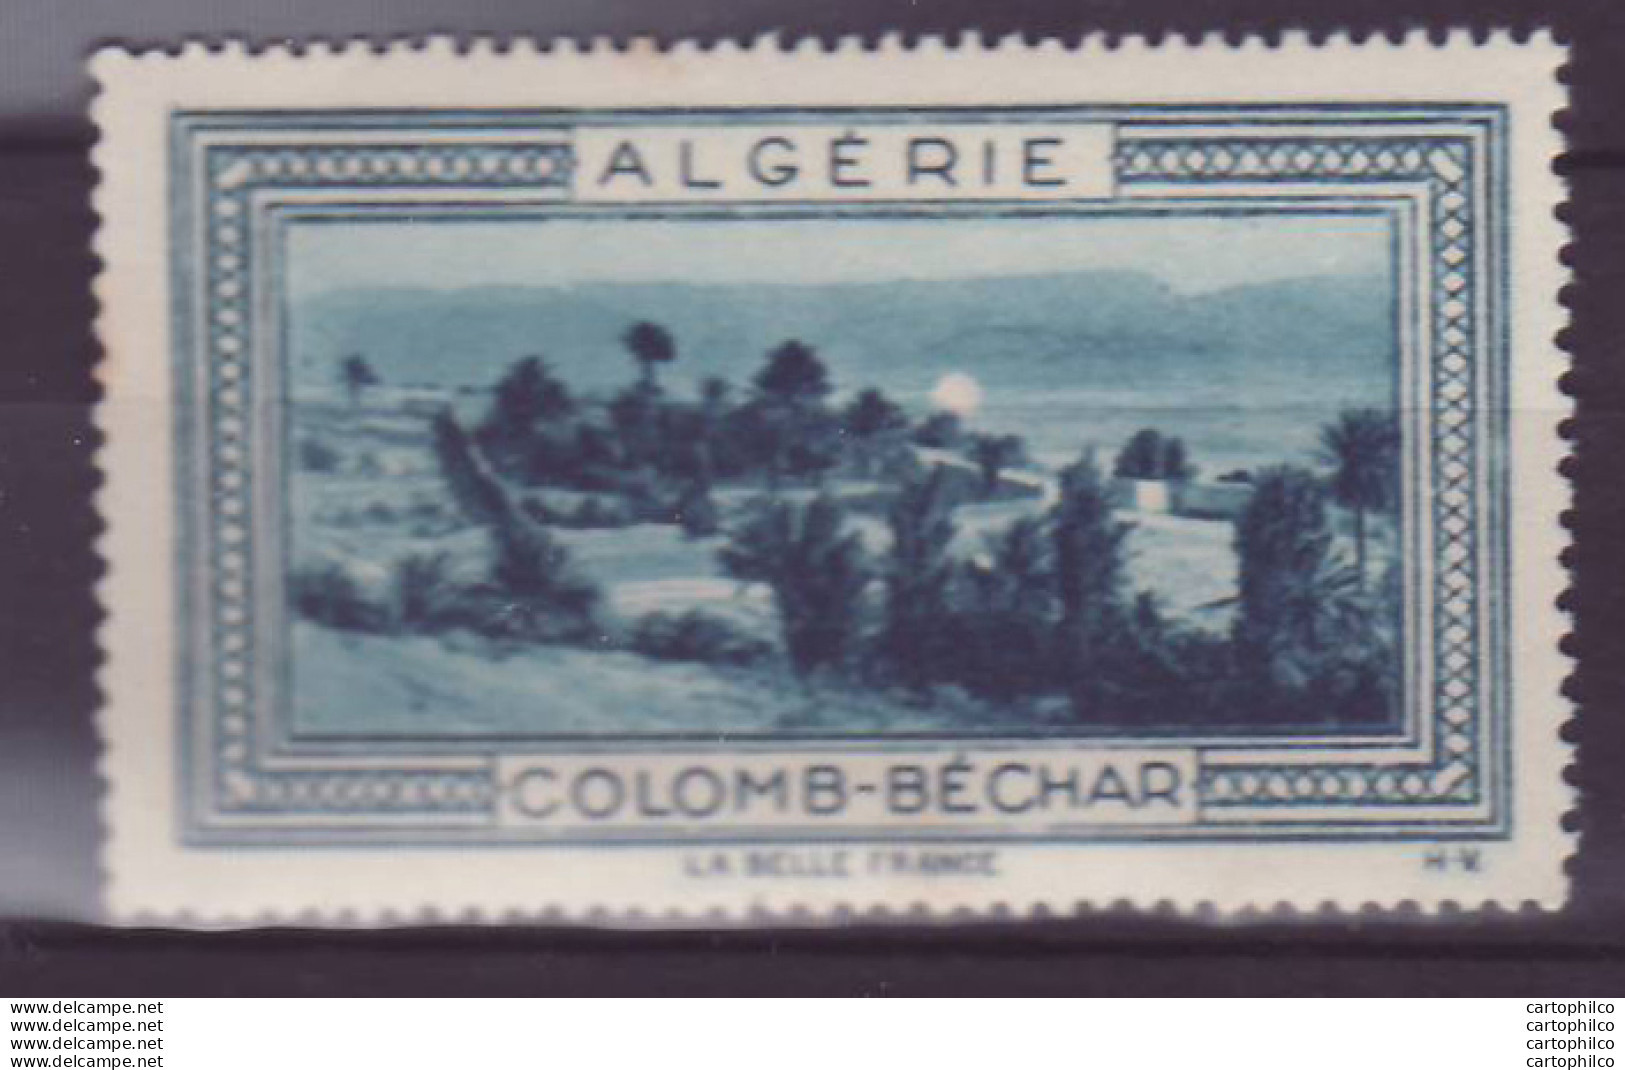 Vignette ** Algerie Colomb-Bechar - Ongebruikt